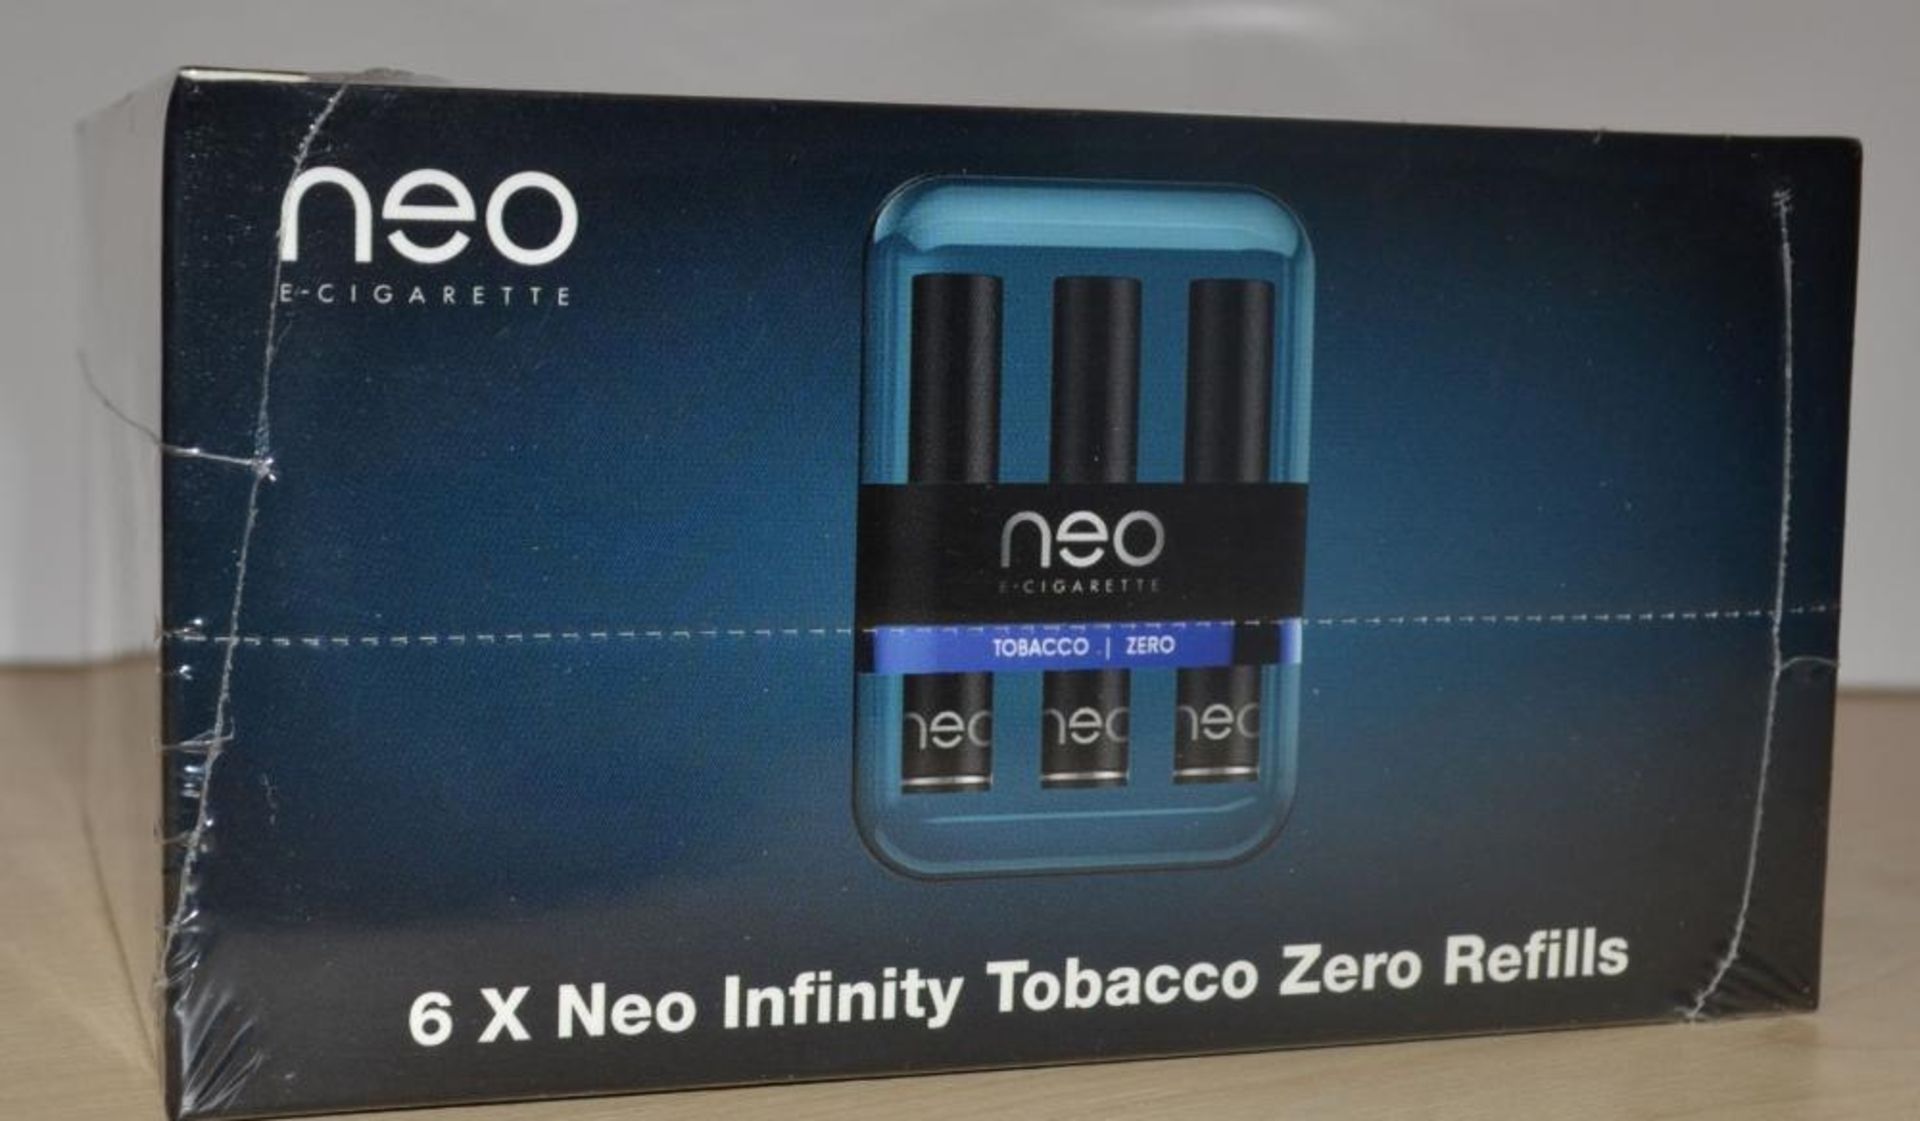 30 x Neo E-Cigarettes Neo Infinity Tobacco Zero Refill Packs - New & Sealed Stock - CL185 - Ref: